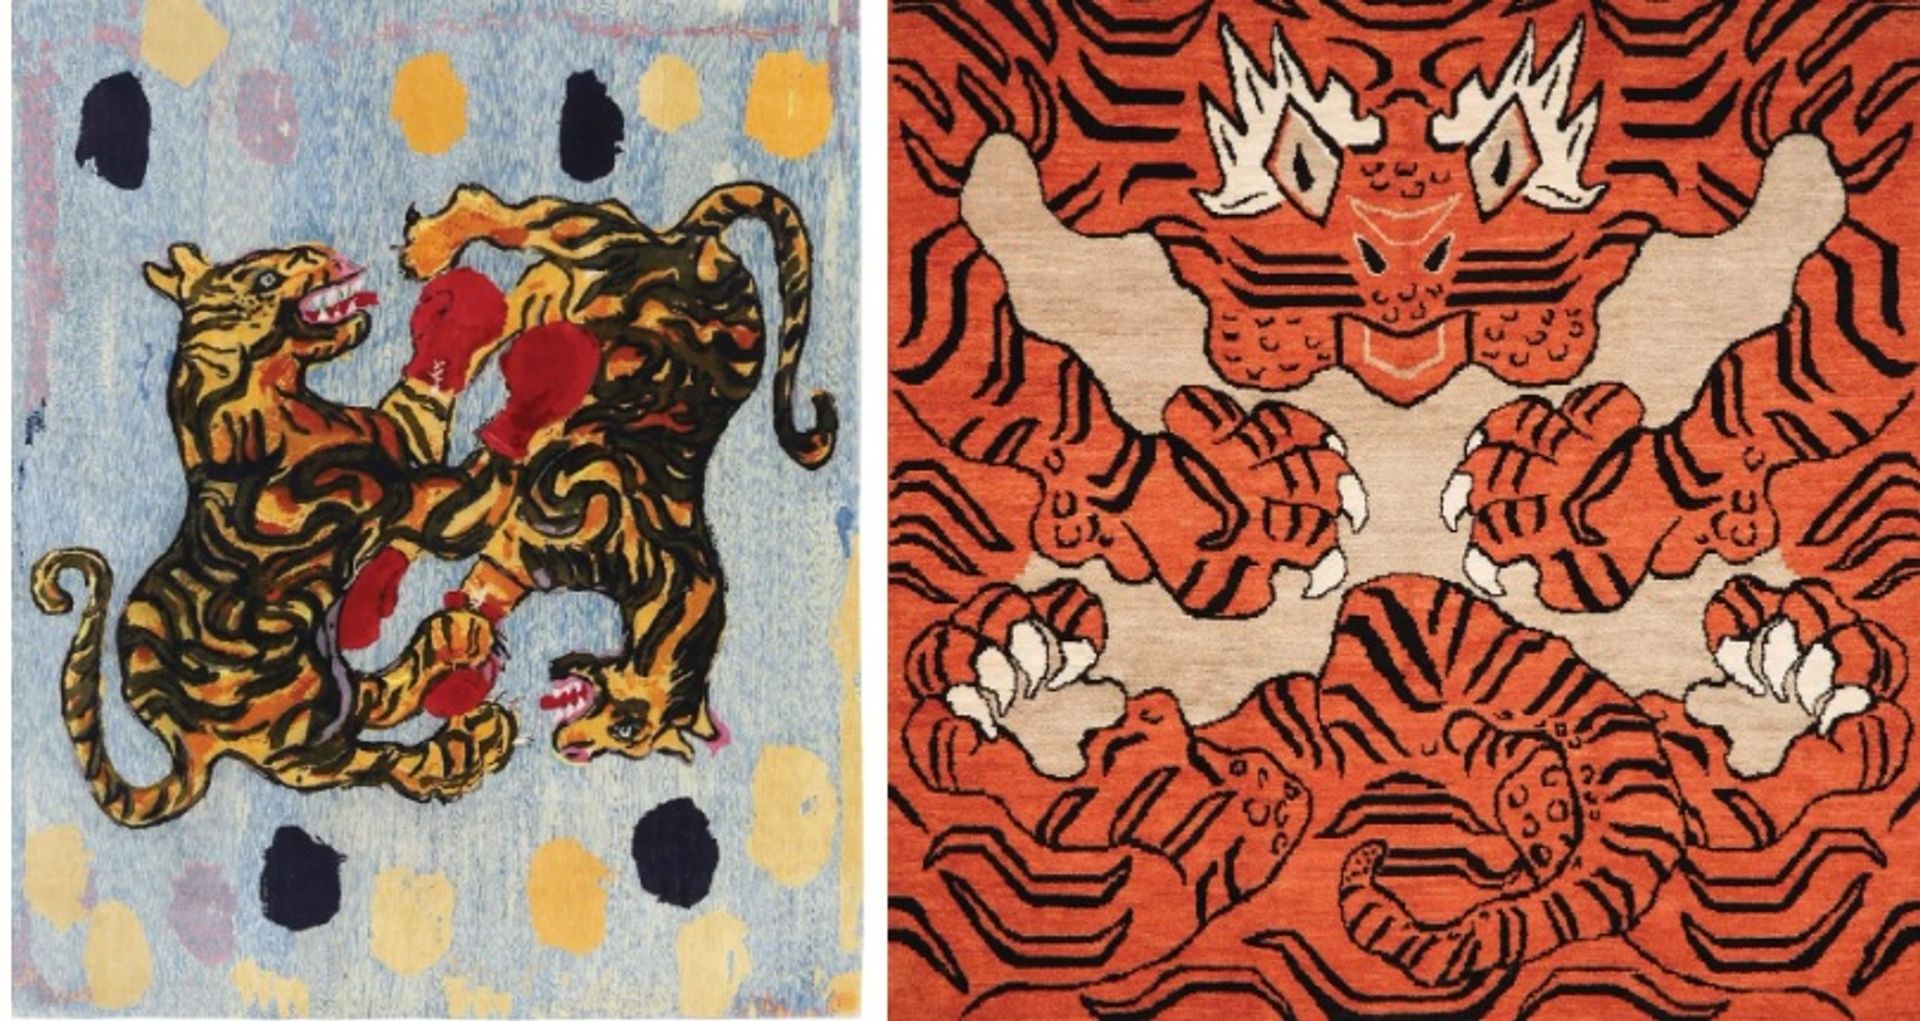 משמאל לימין: "מלחמת הנמרים" של פיטר דויג (2022) ו"הטייגר" של איי וויוויי (2022)

באדיבות האמנים